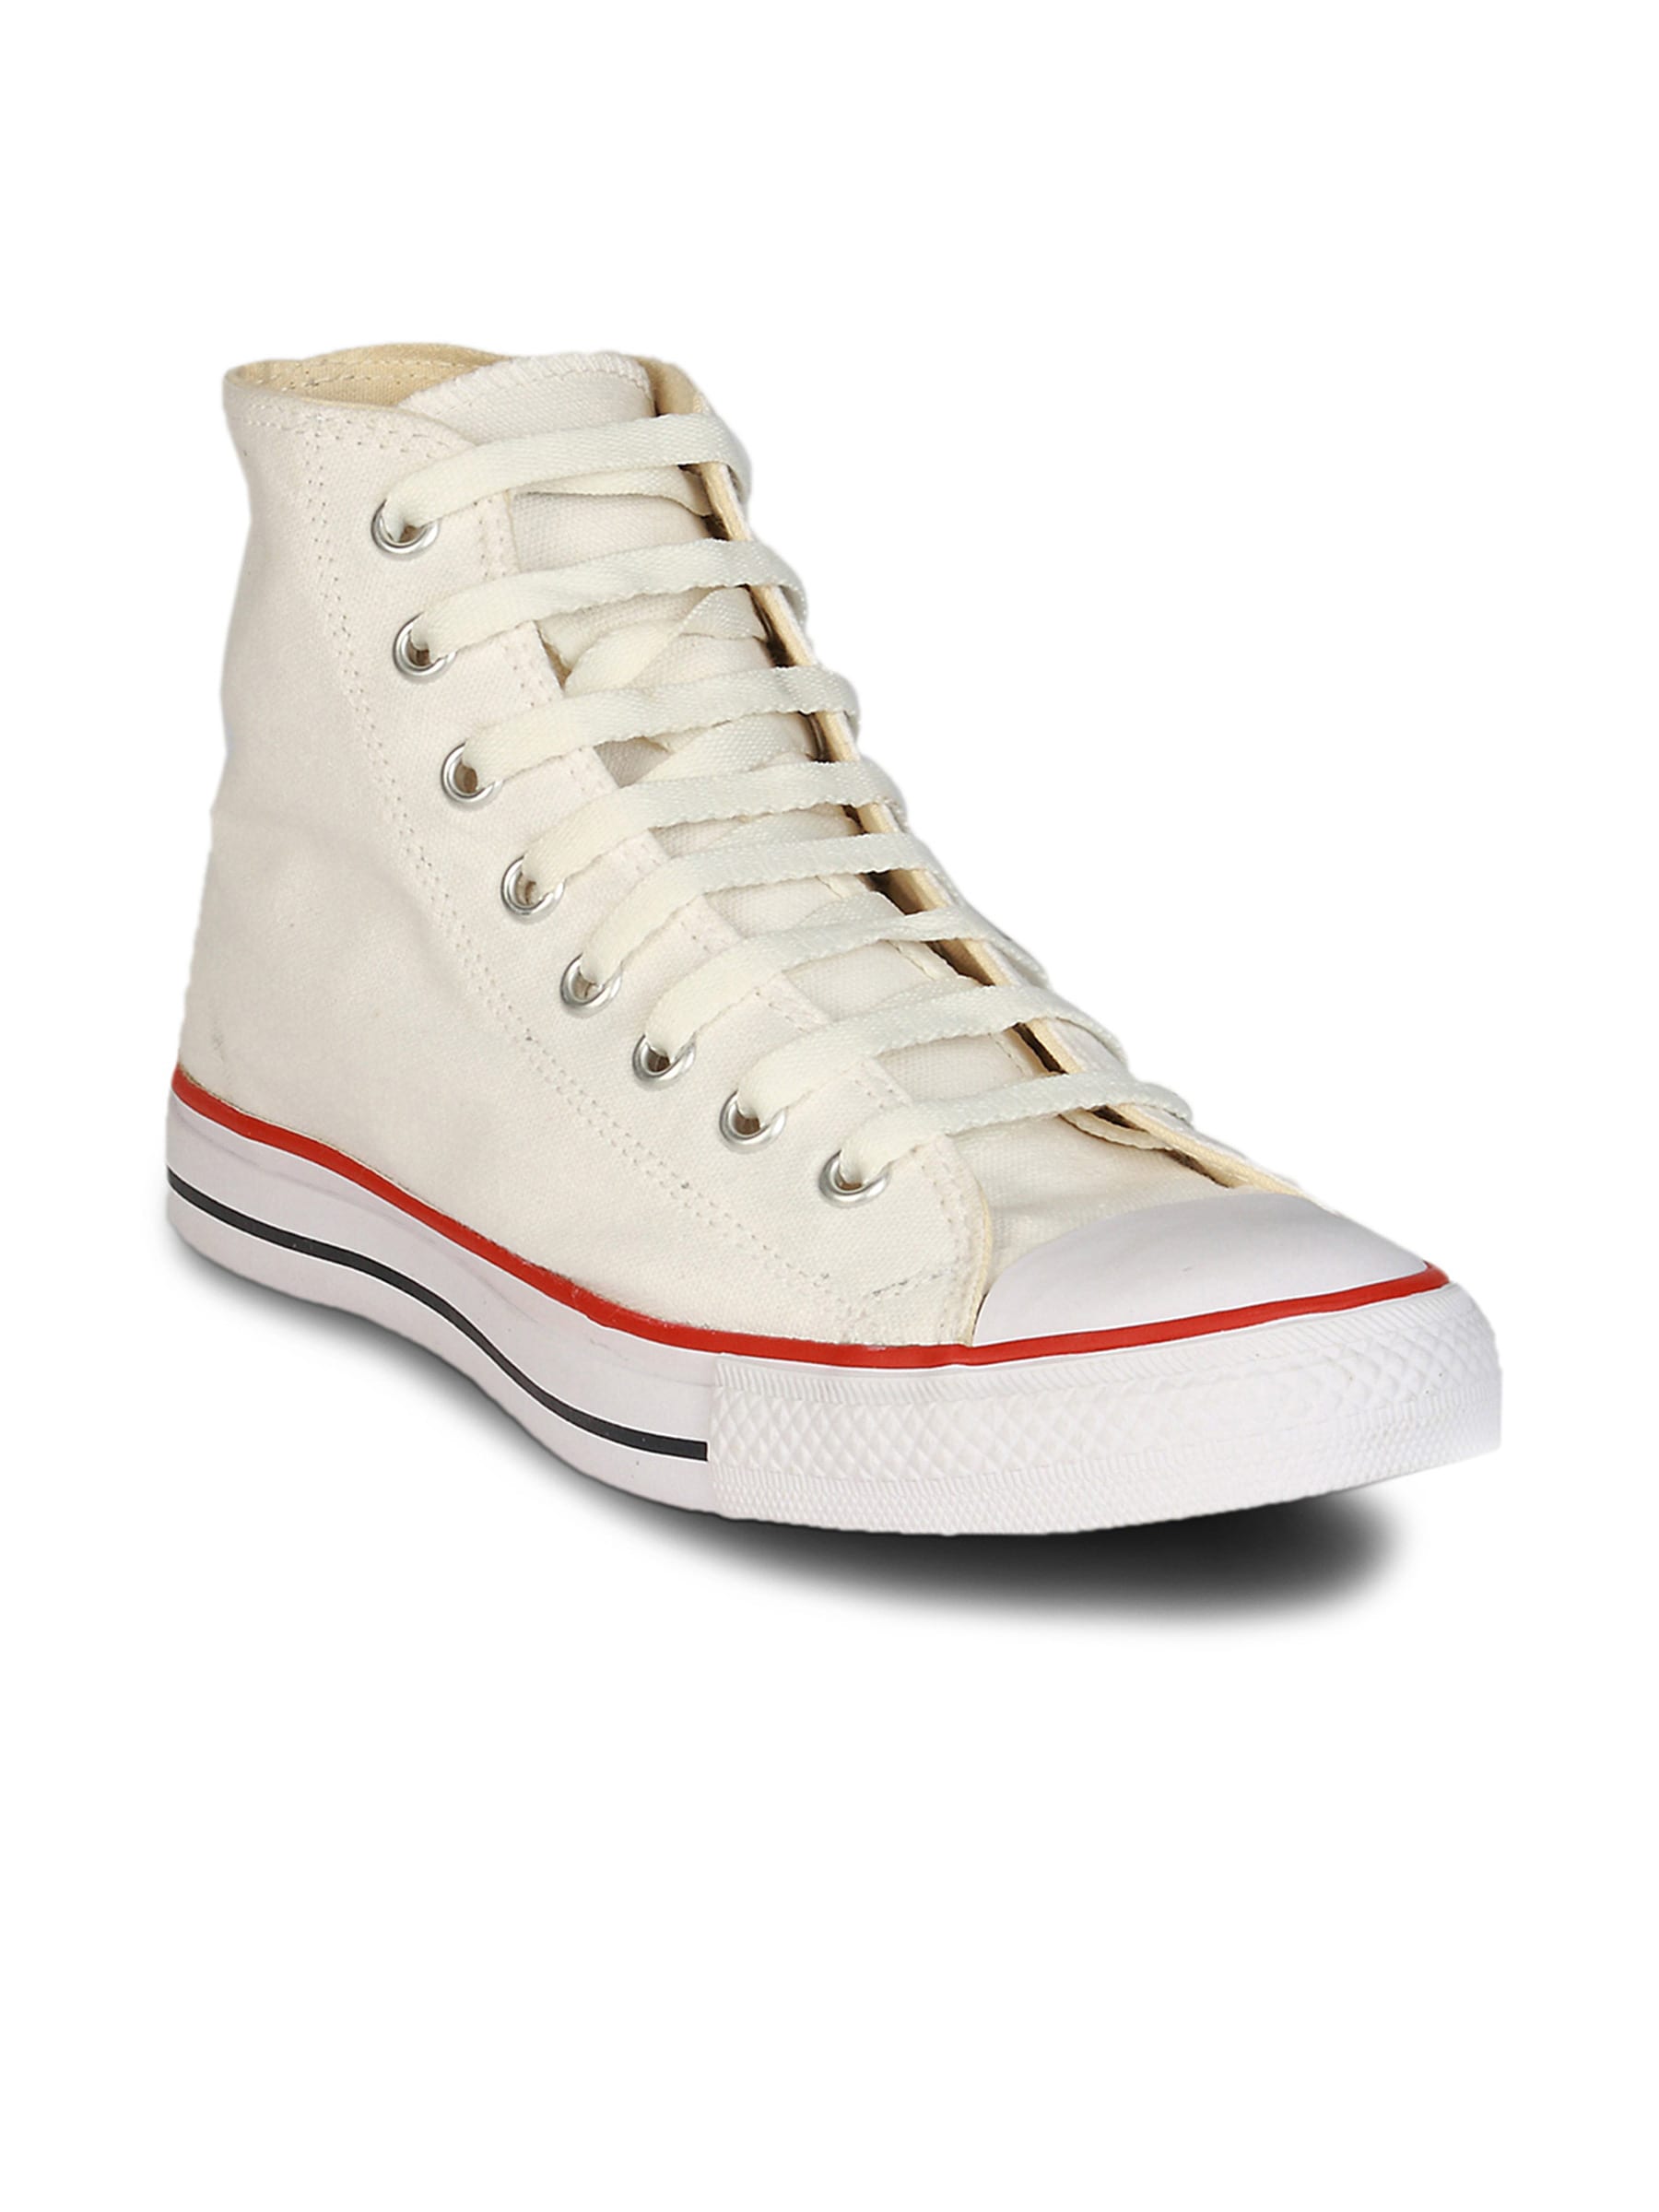 Converse Unisex Canvas Hi White Shoe